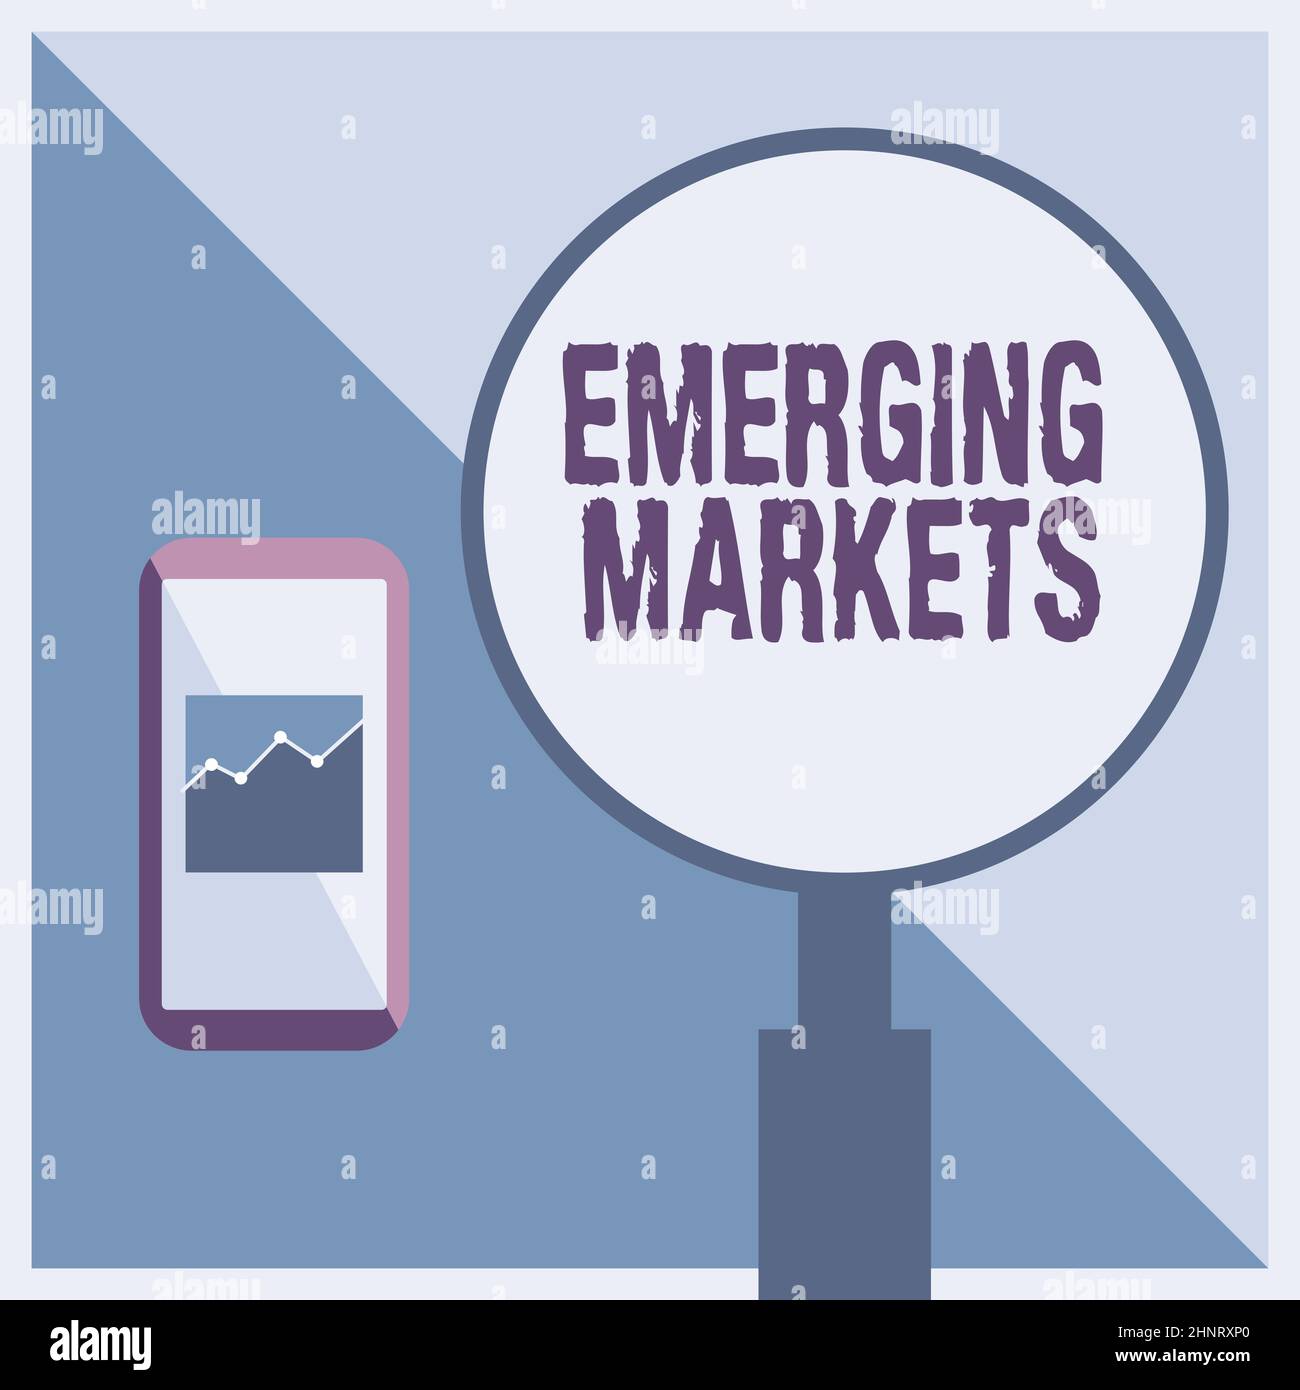 Schild mit Emerging Markets. Überblick über das Unternehmen Land, das einige Merkmale entwickelter Geschäfte aufweist Abbildung des aktiven Smartphones neben Einem großen Vergrößerungsglas. Stockfoto